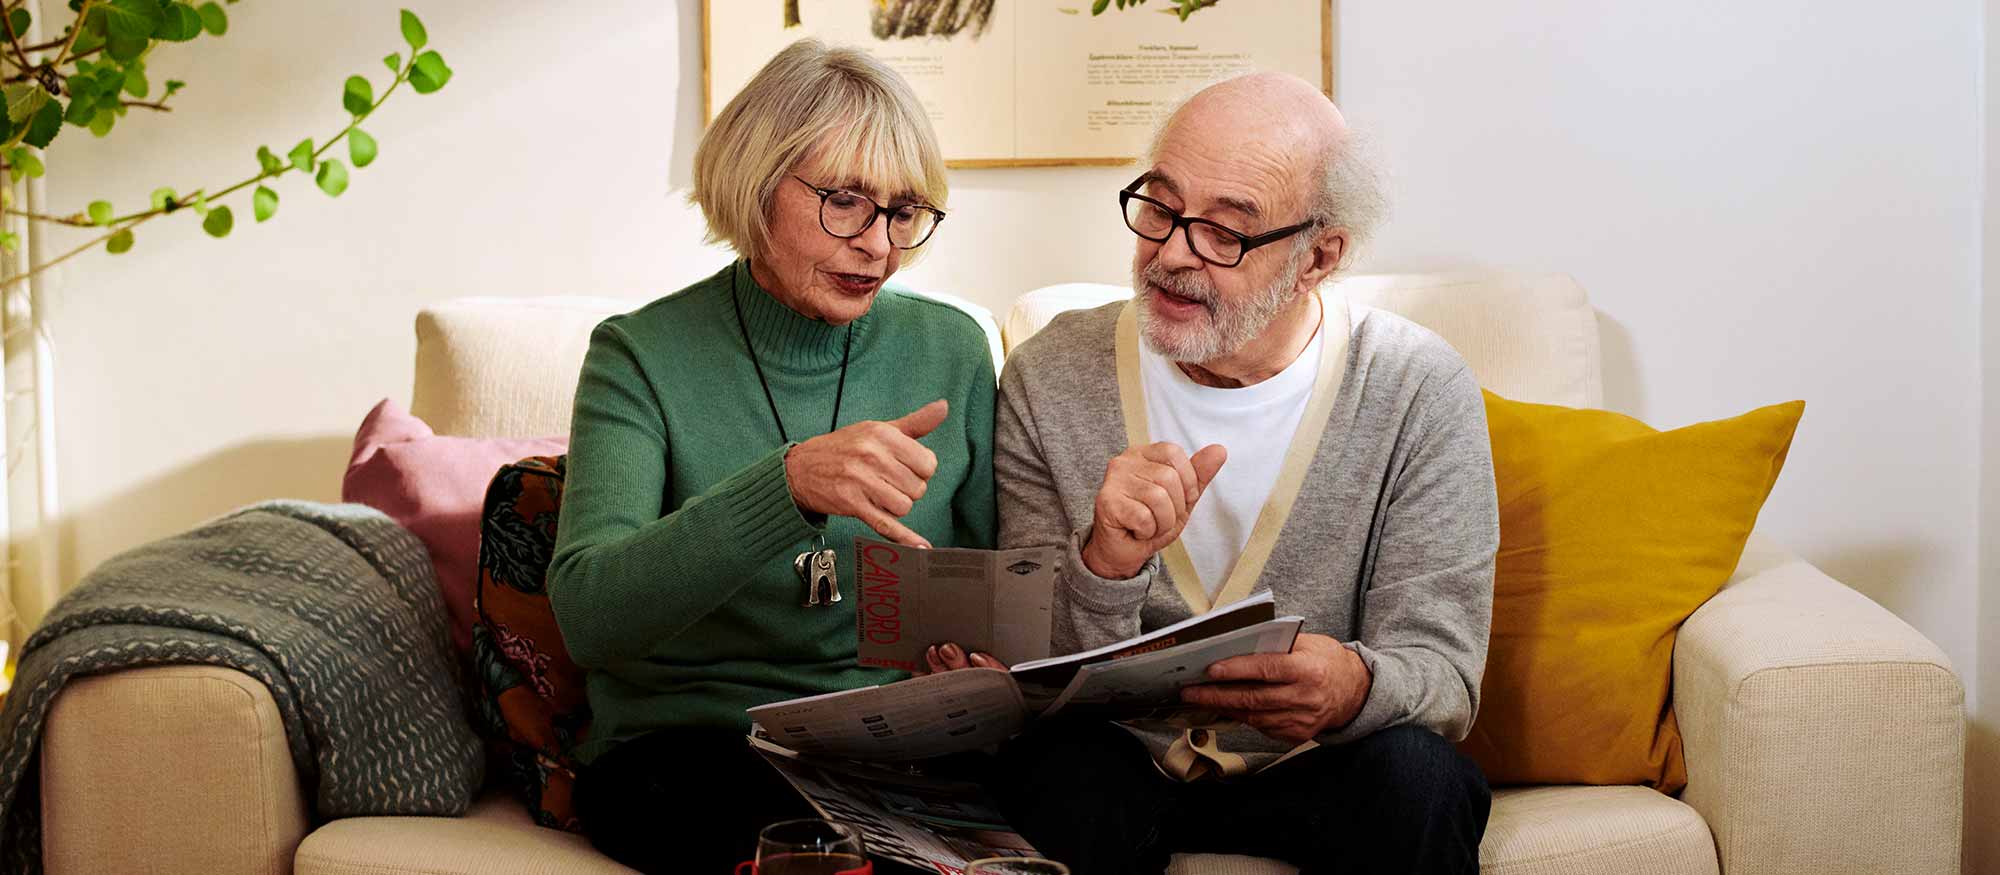 Äldre par sitter i soffan och tittar på en broschyr